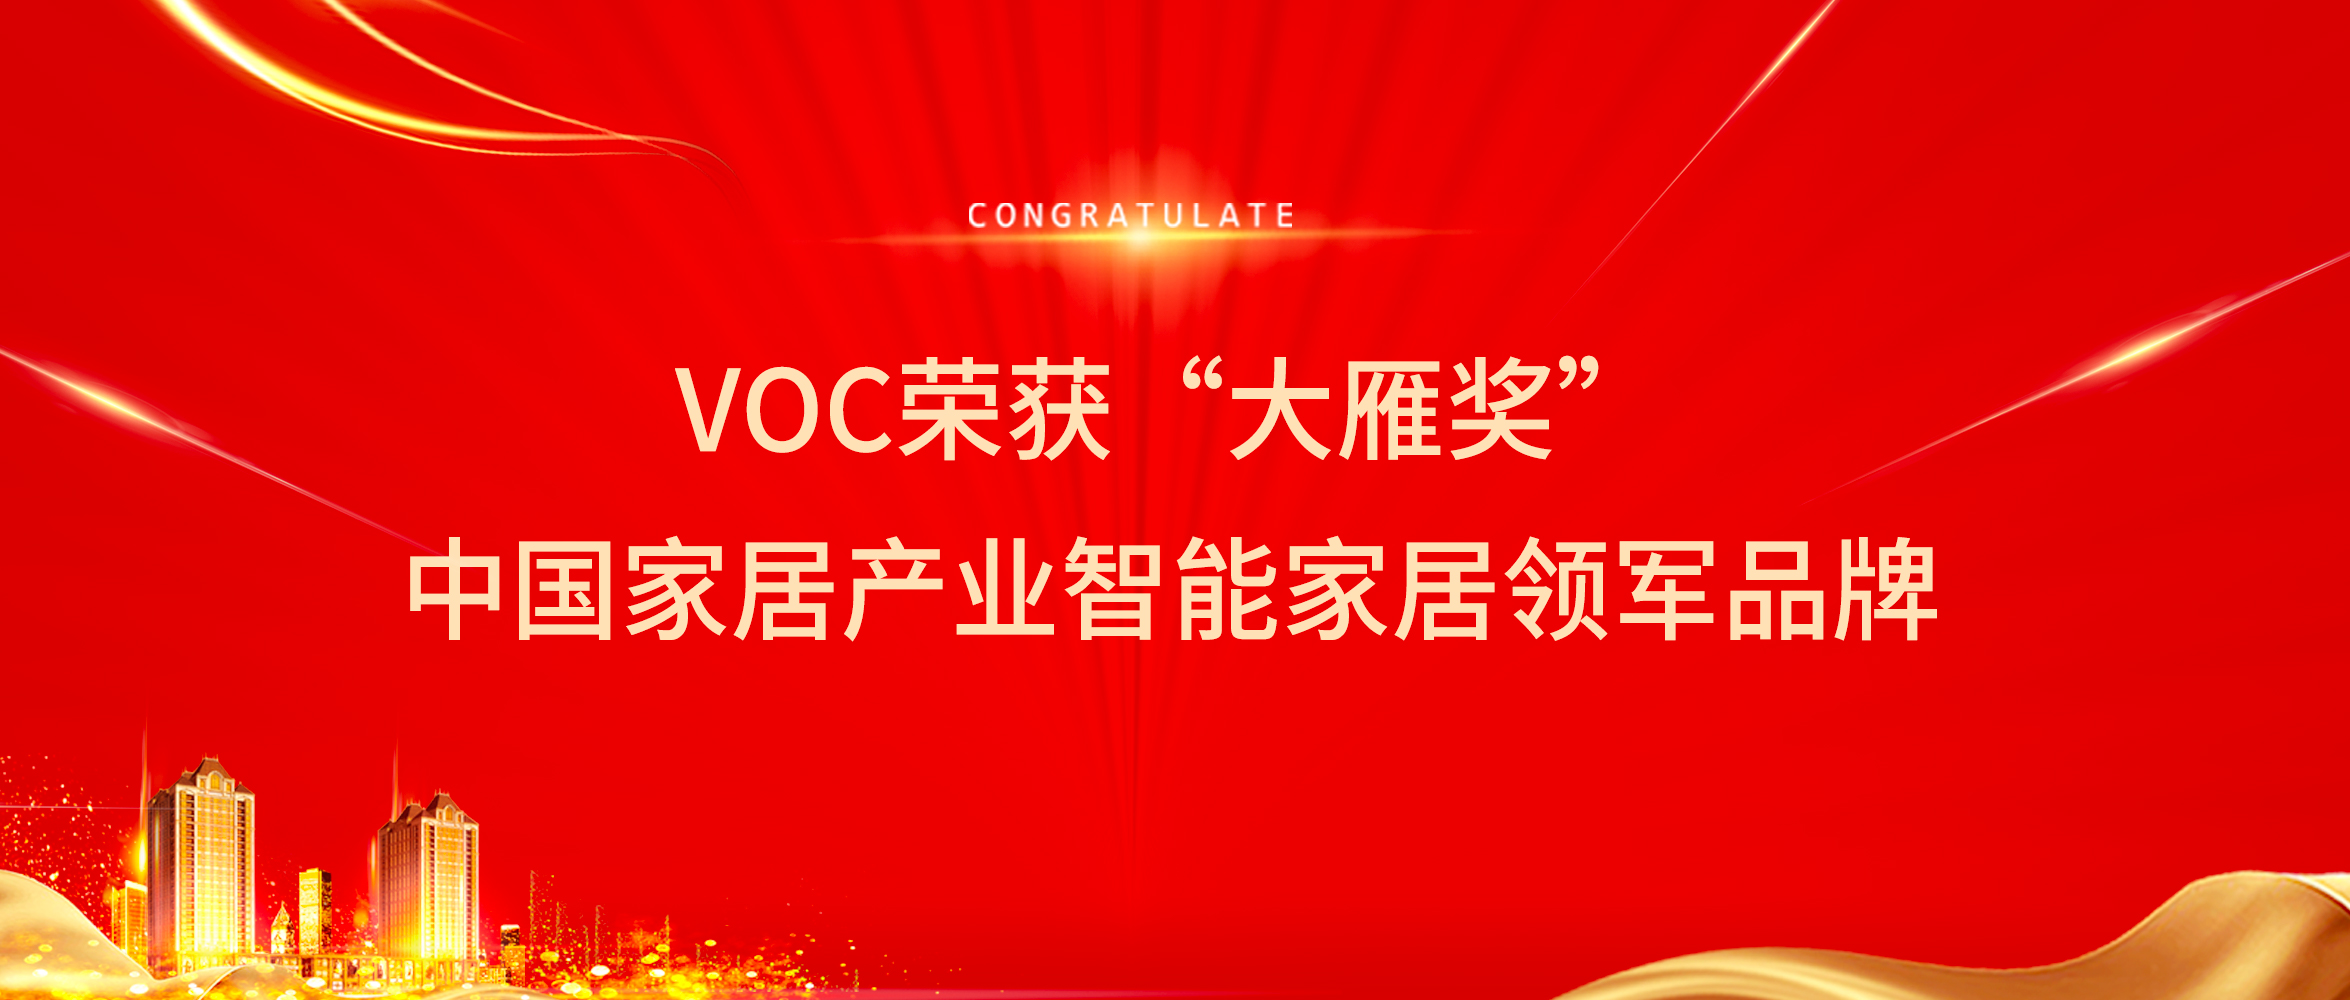 品牌Highlight | VOC荣获“大雁奖”中国家居产业智能家居领军品牌